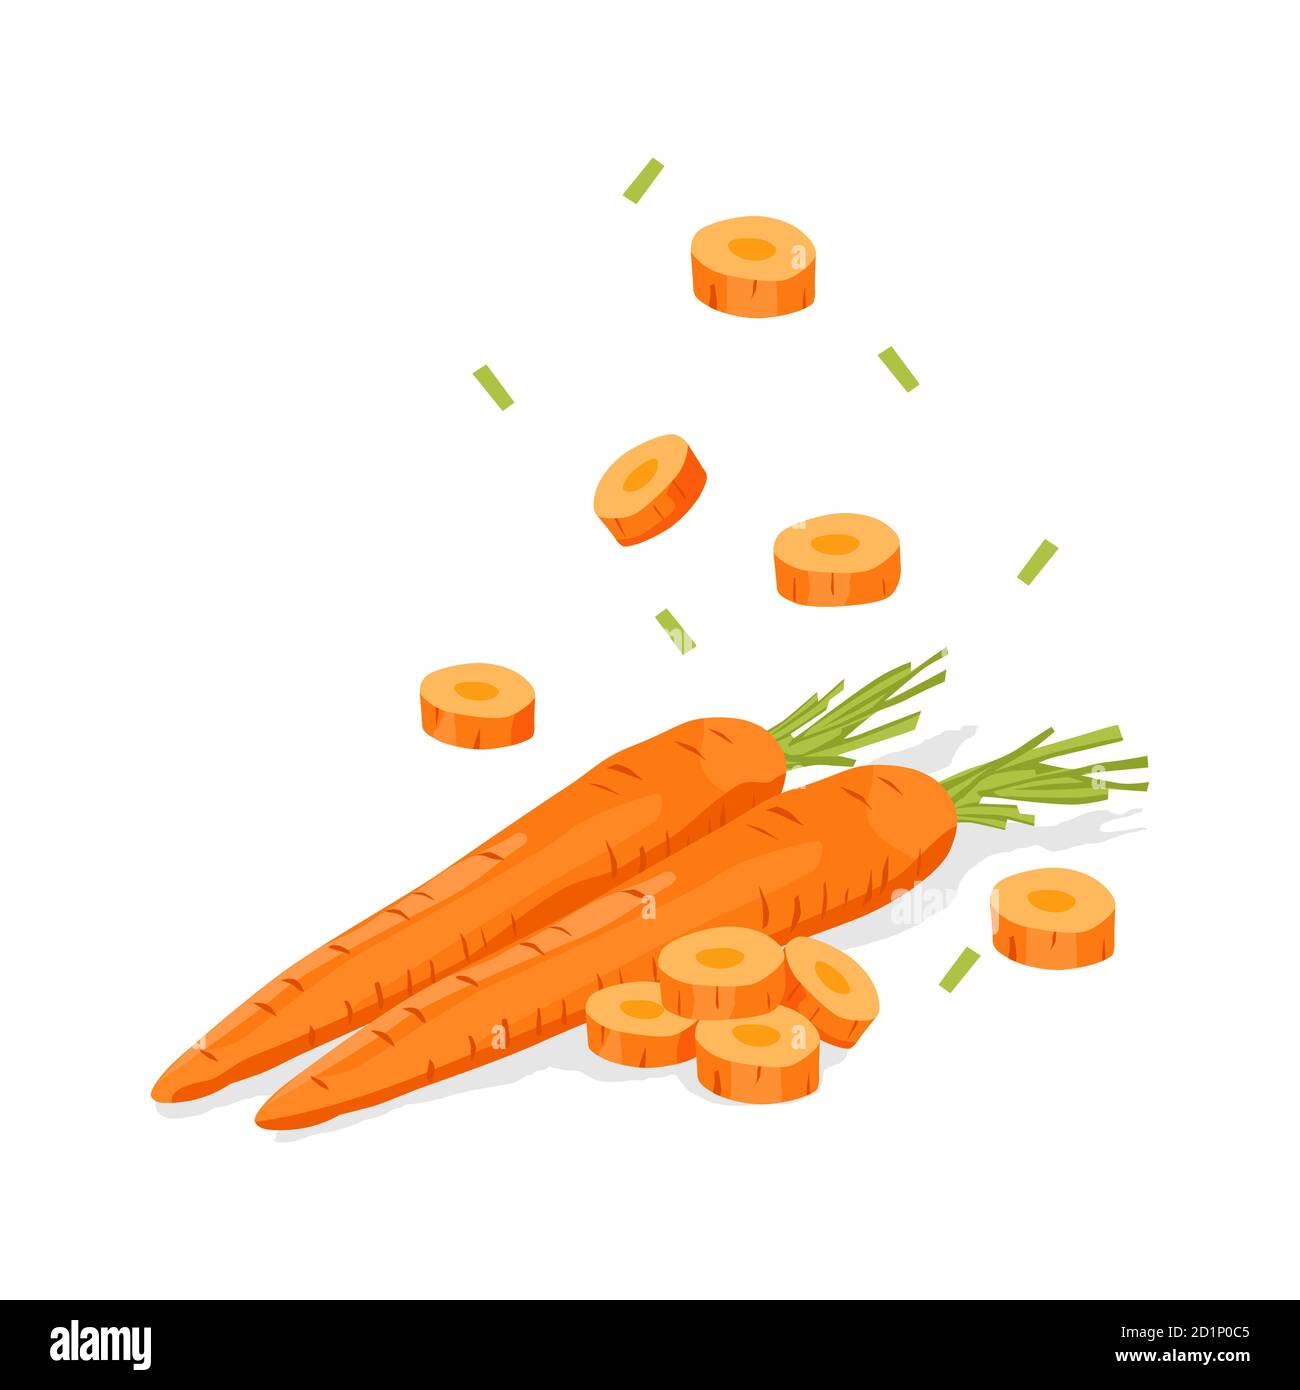 Vecteur de chute de carotte de légumes frais sur fond blanc Illustration de Vecteur